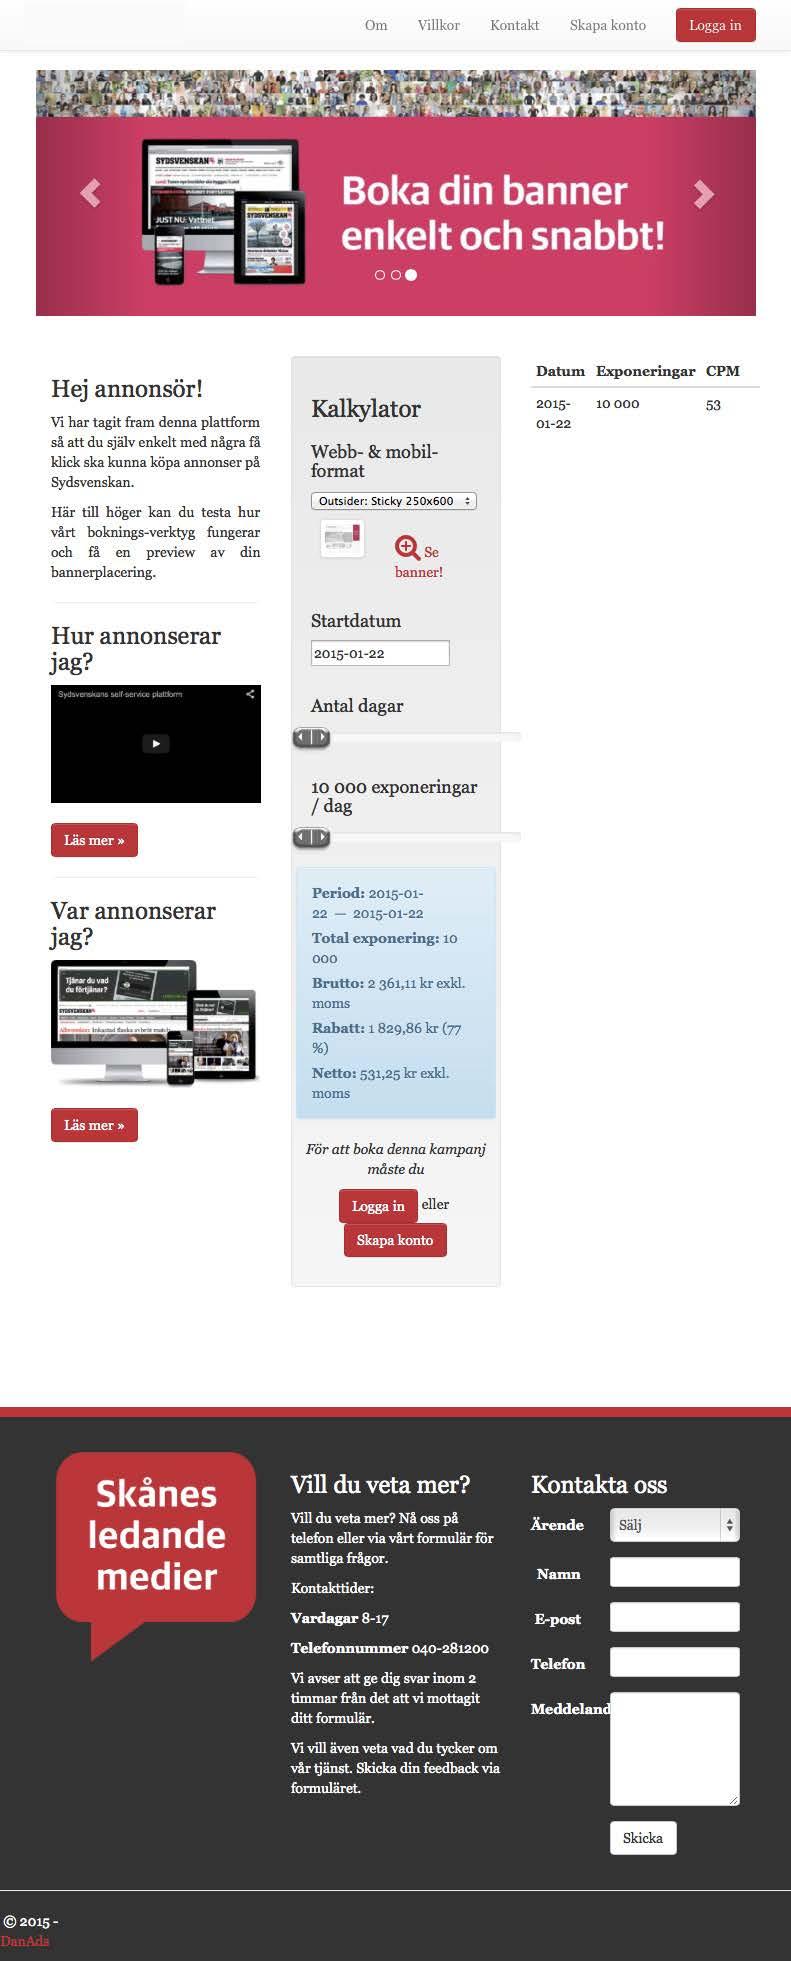 Annonsverktyg http://hd.danads.se http://sydsvenskan.danads.se Vårt webbaserade annonsverktyg låter dig boka, hantera samt följa statistik kring dina annonser enkelt och snabbt.